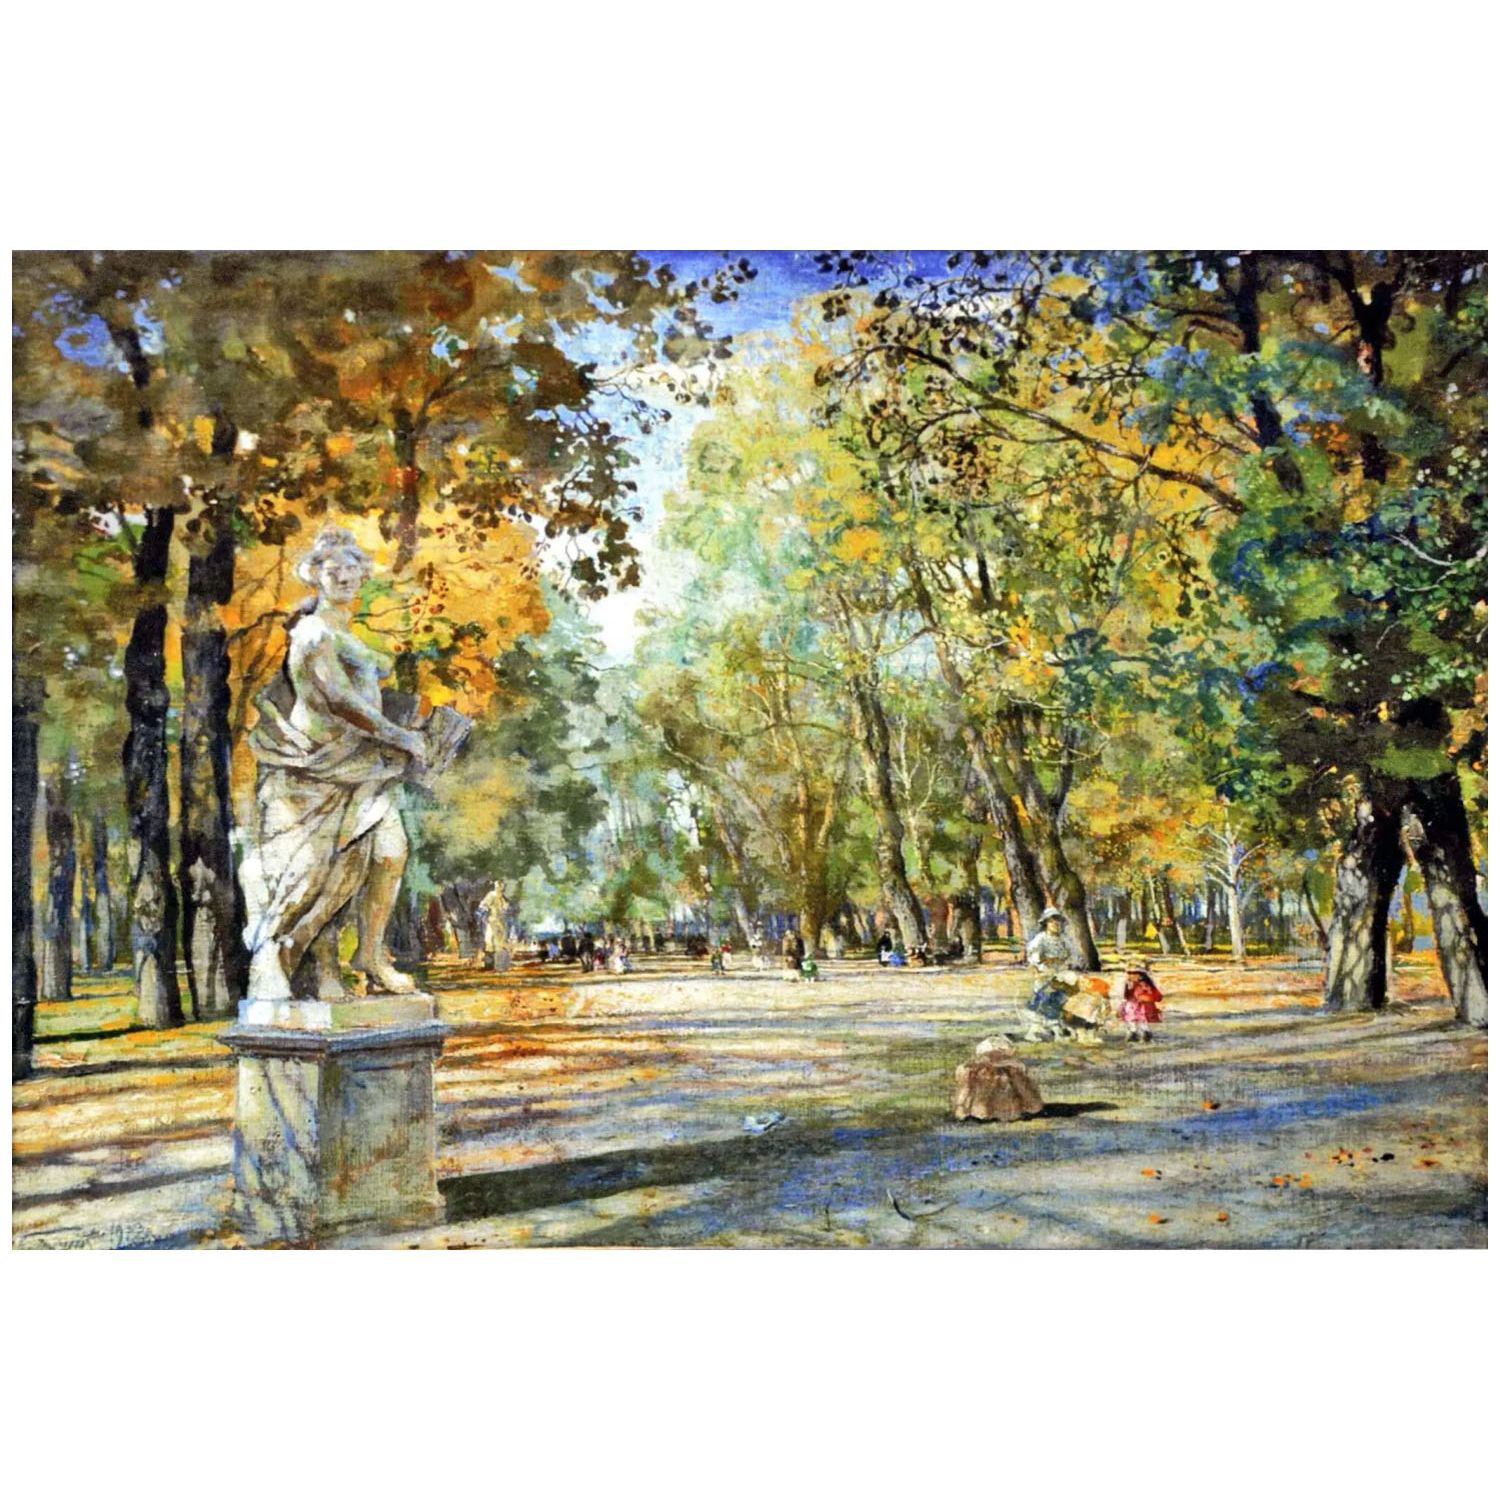 Исаак Бродский. Летний сад. 1922. Киевская картинная галерея